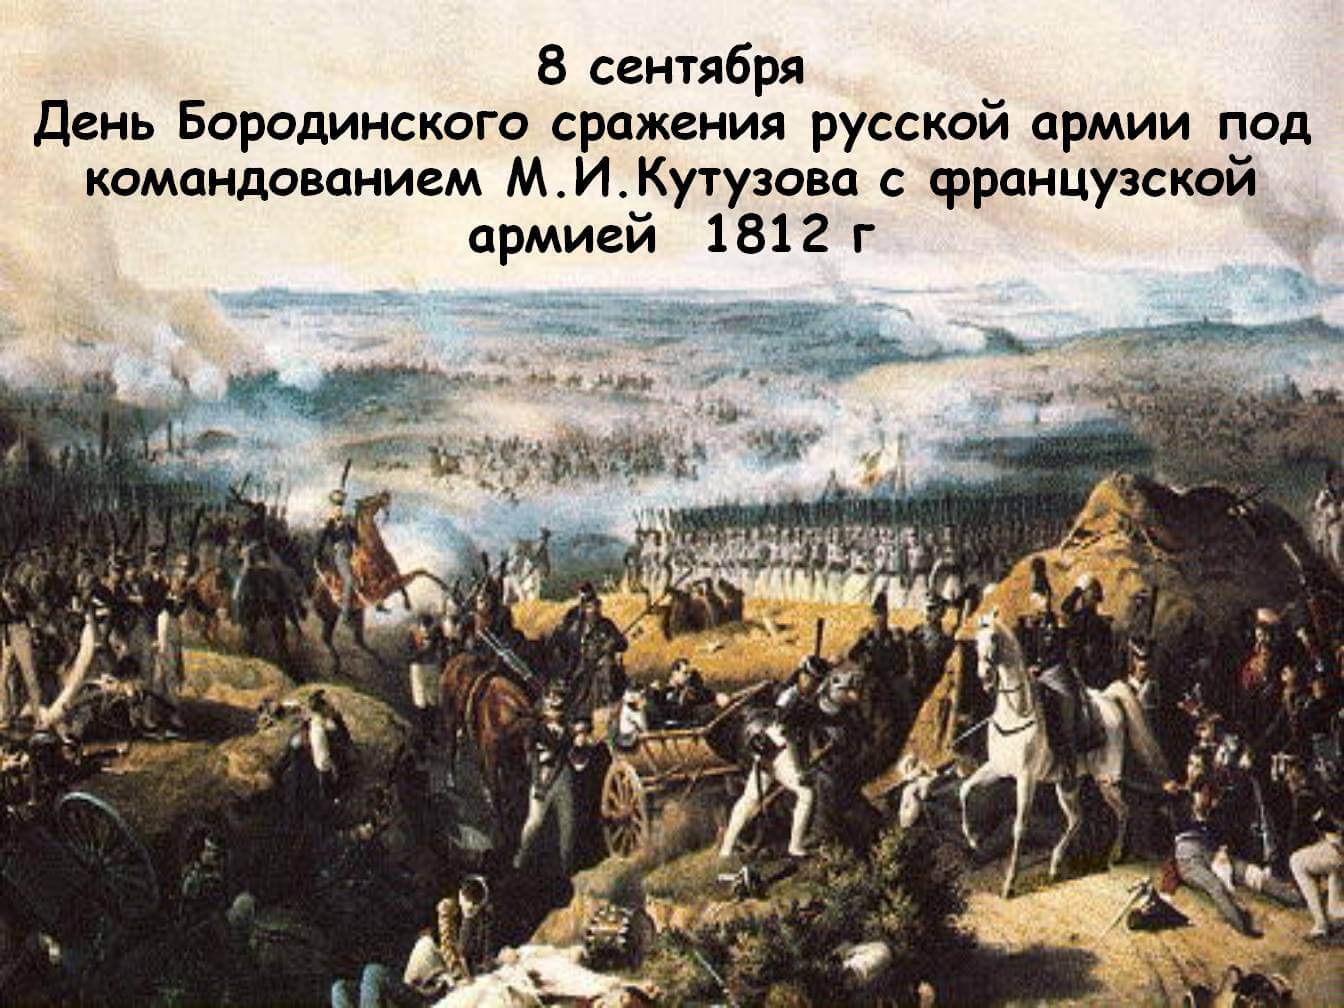 Бородинское сражение 1812 Дата